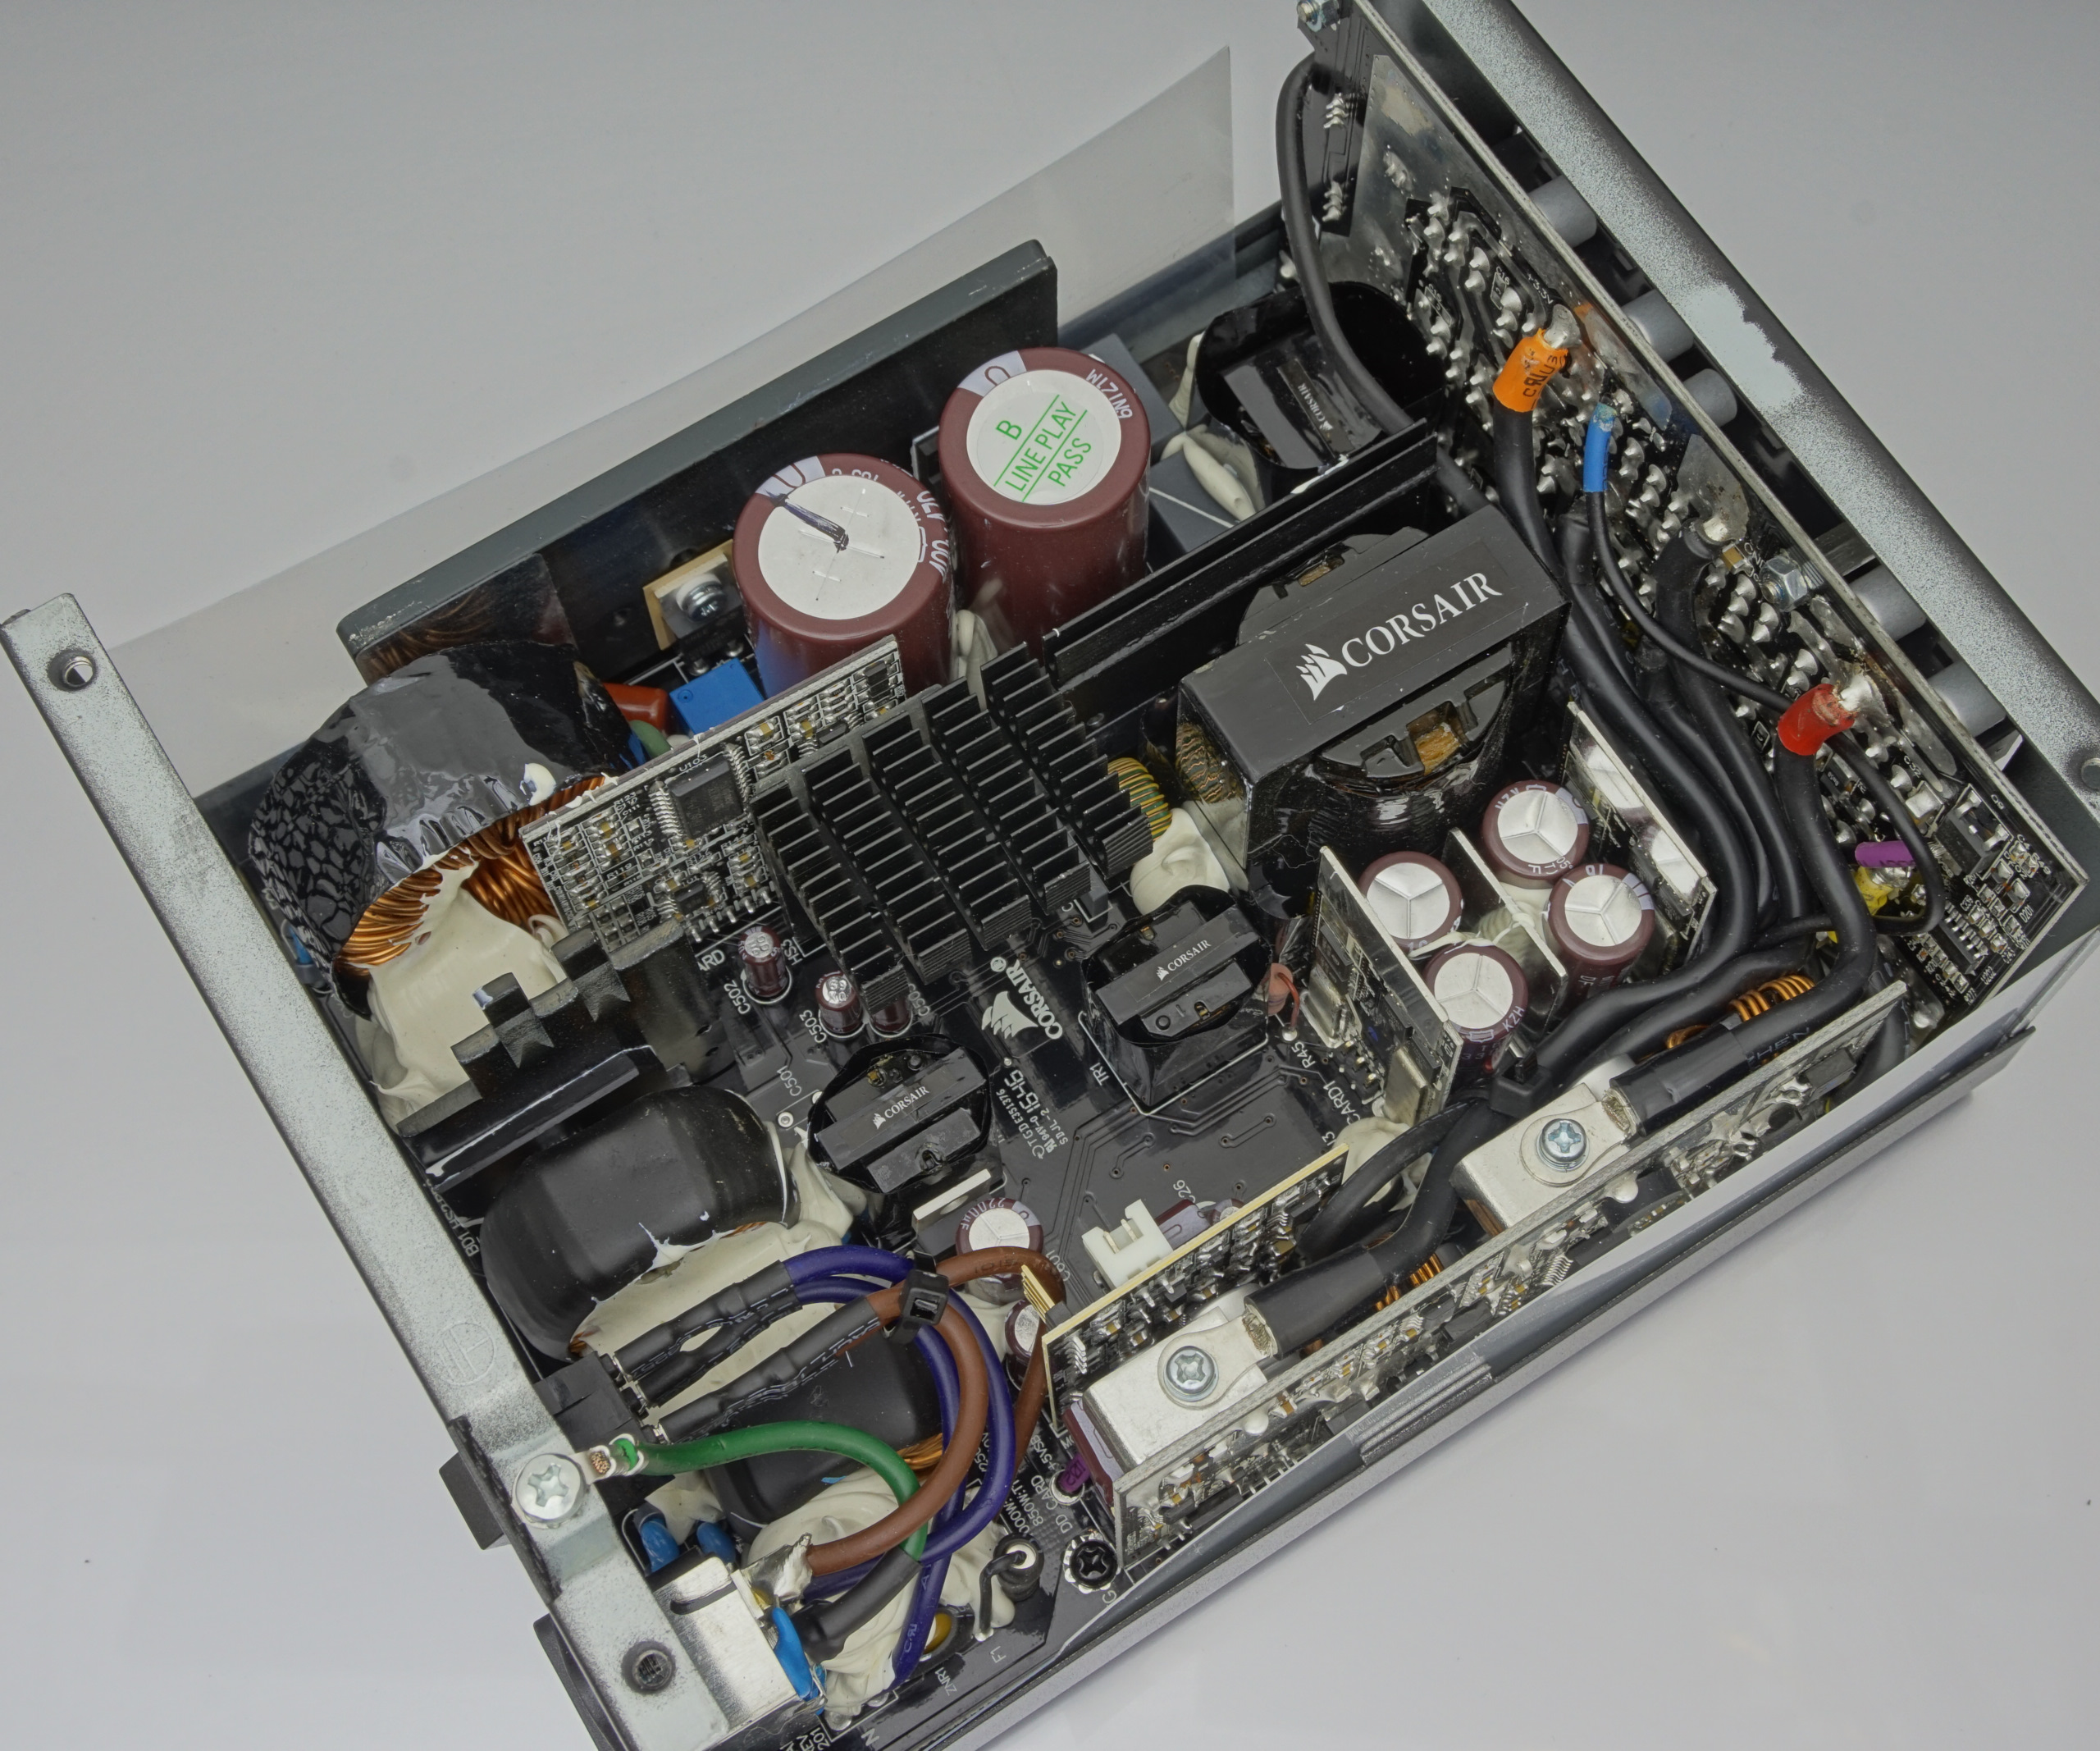 Final Words & Conclusion - The HX850 80Plus Platinum PSU Review